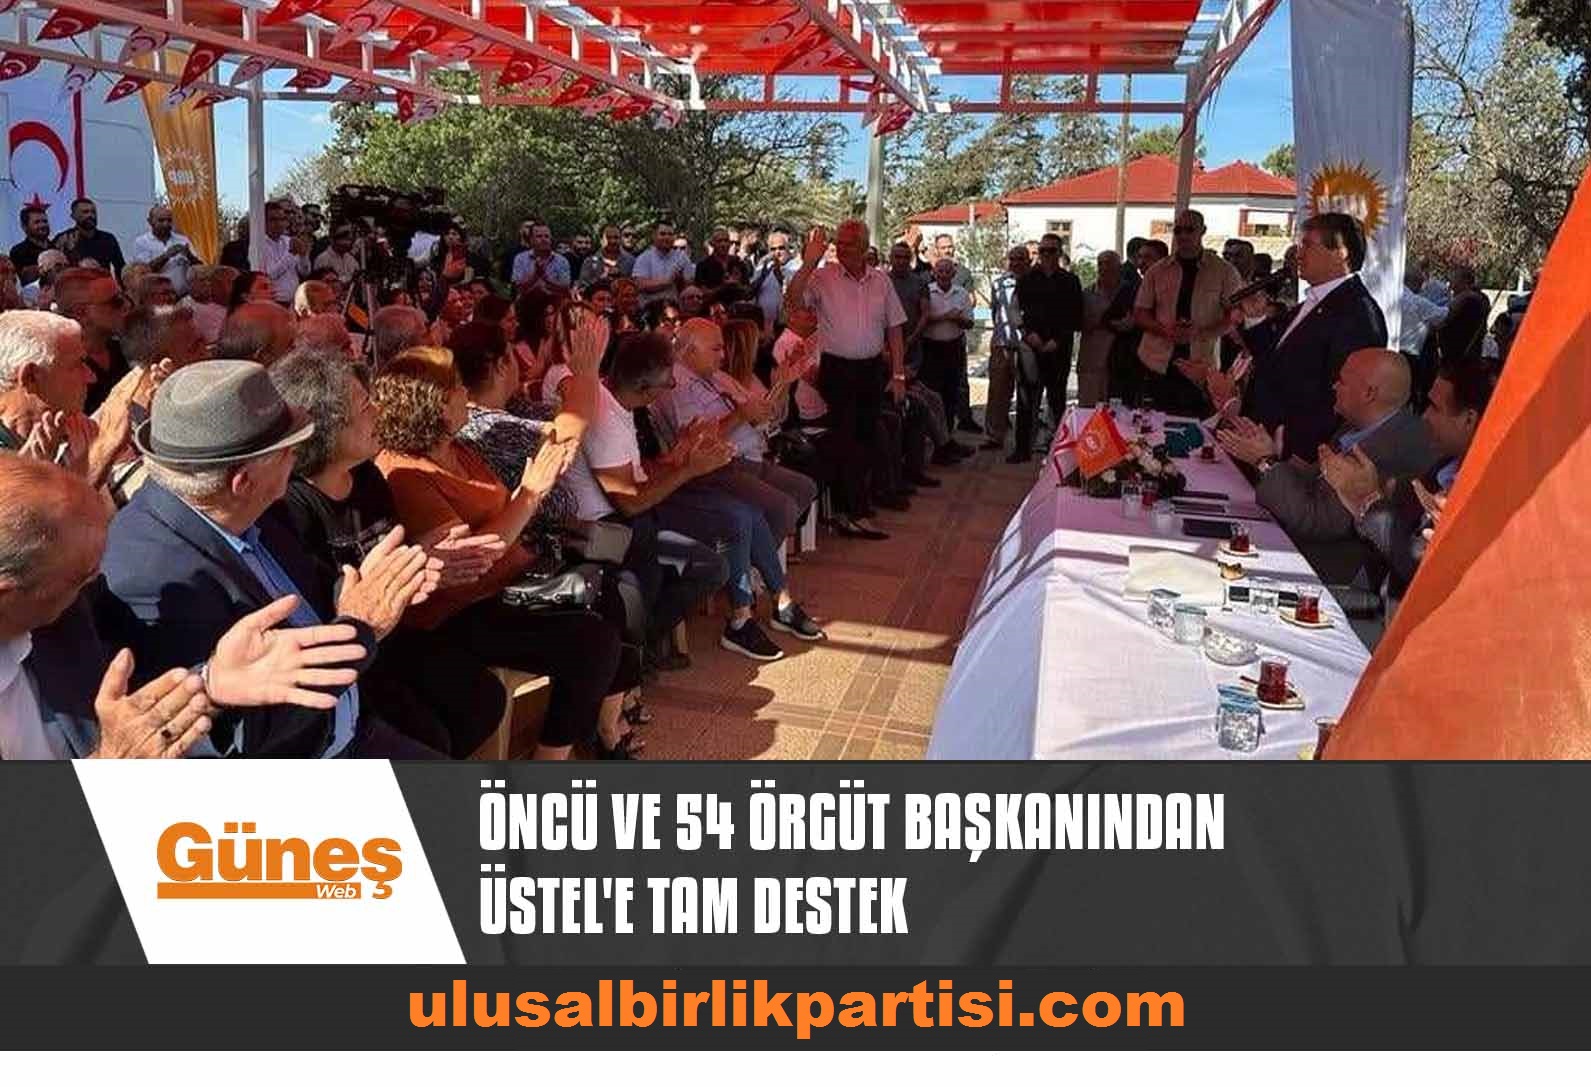 Read more about the article ÖNCÜ VE 54 ÖRGÜT BAŞKANINDAN ÜSTEL’E TAM DESTEK